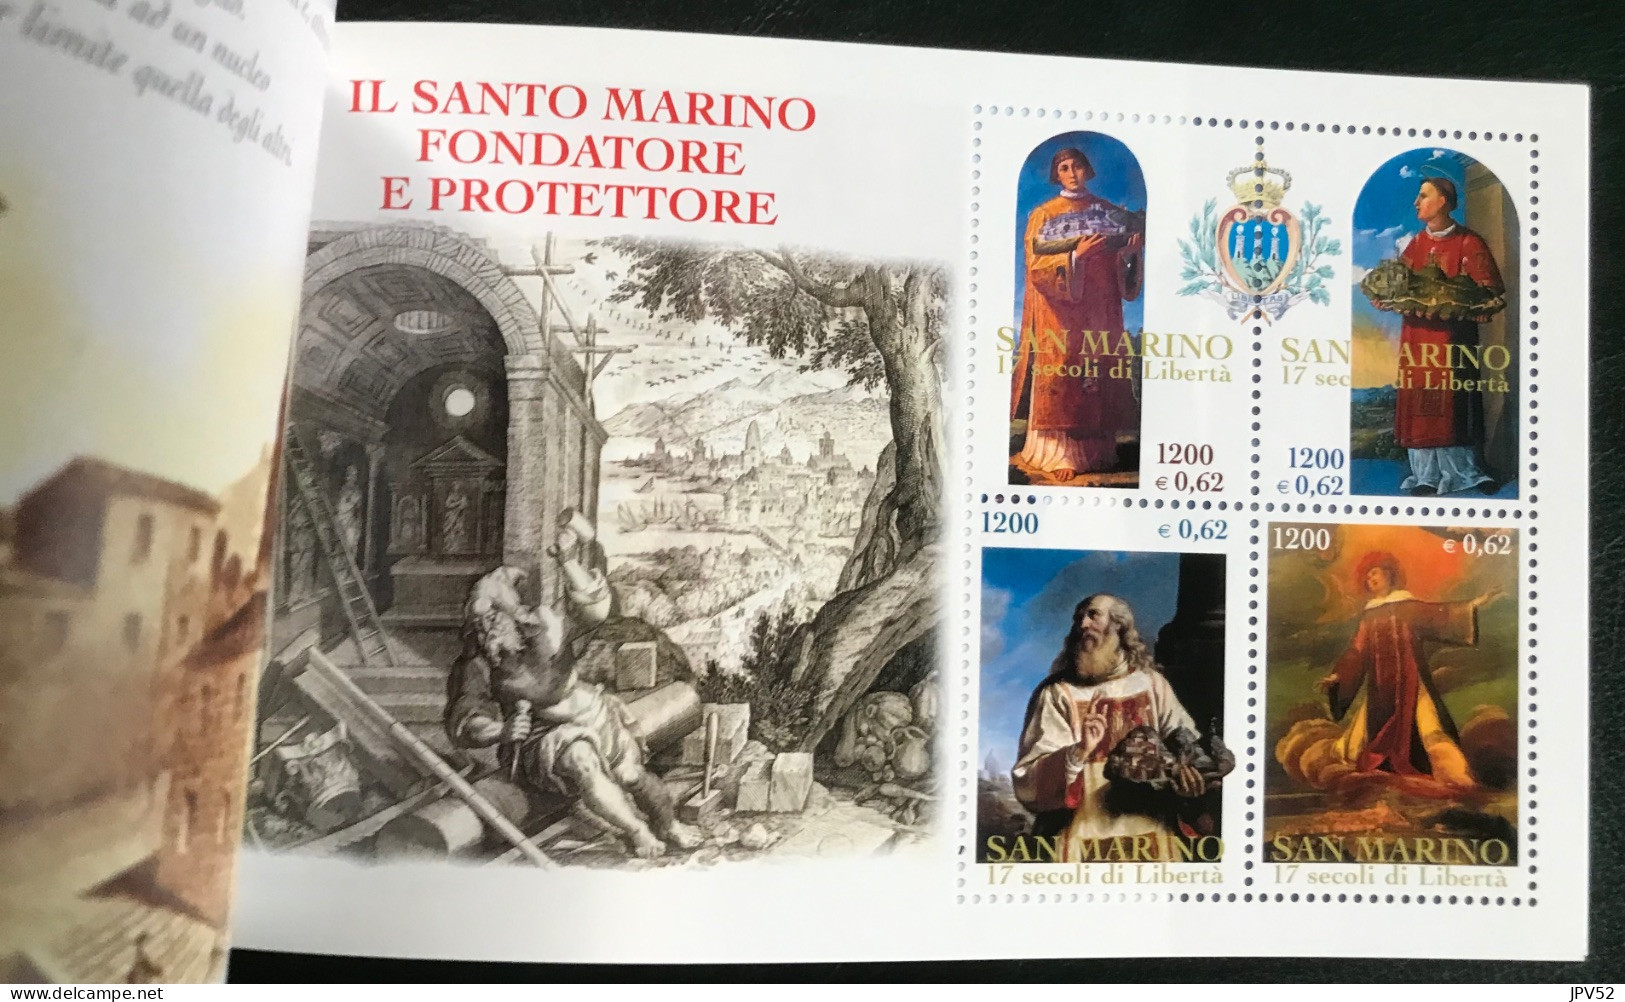 San Marino - VEL1/25 - 2000 - MNH - Michel MH 6 - 1700j Repubblica Di San Marino - Libretti